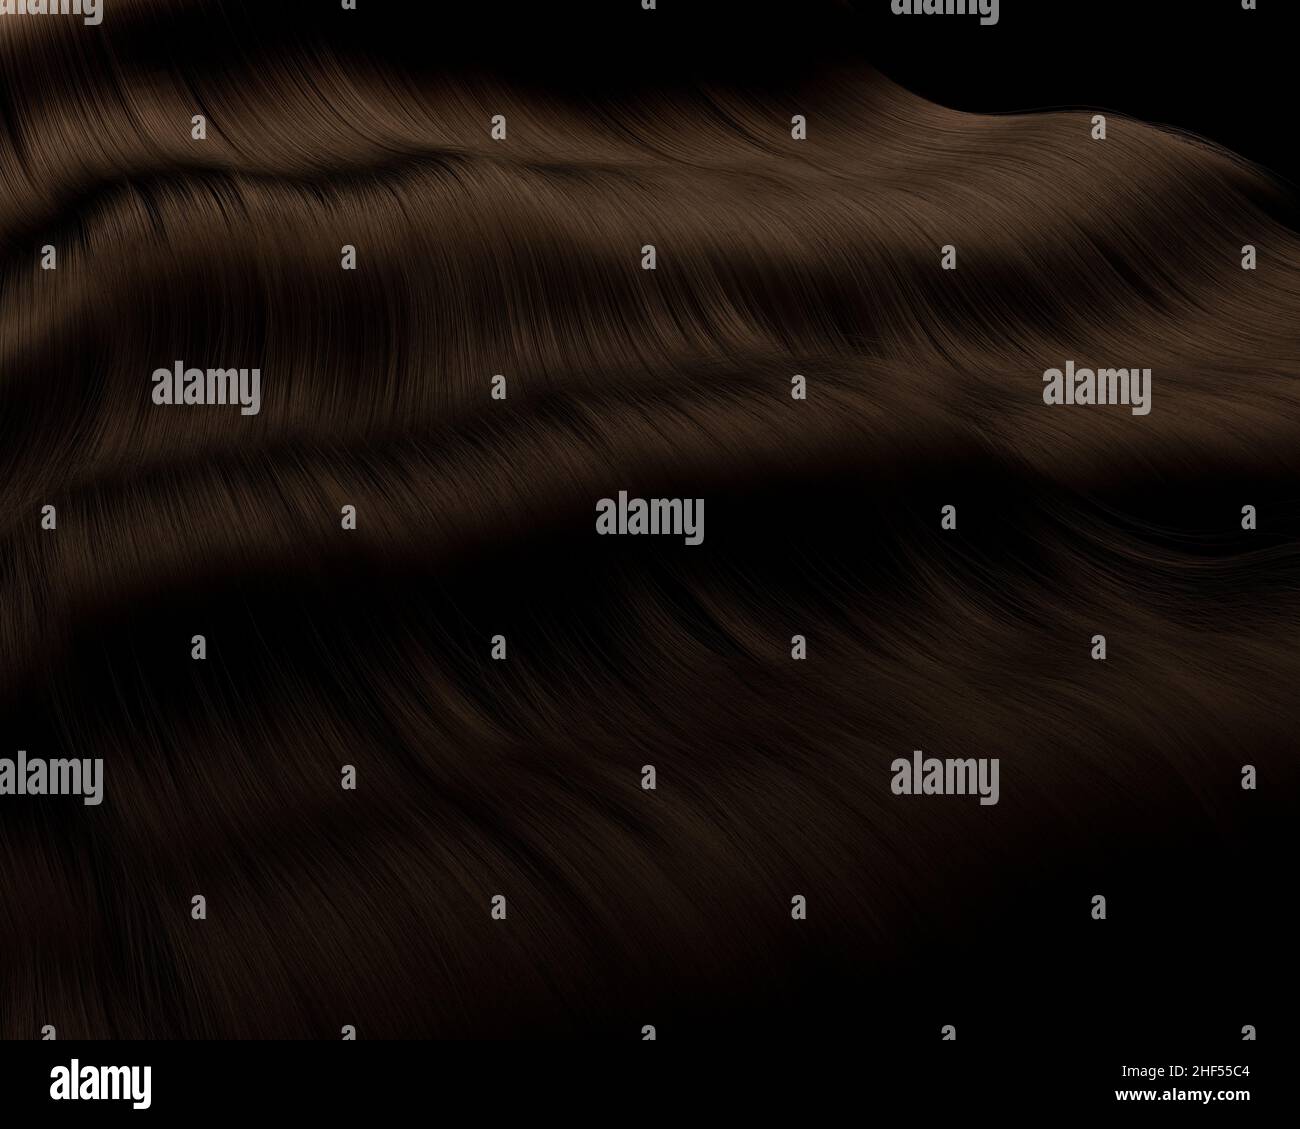 Nahaufnahme von dickem, glänzendem, brünett gewelltem Haar auf dunklem Hintergrund - 3D Render Stockfoto